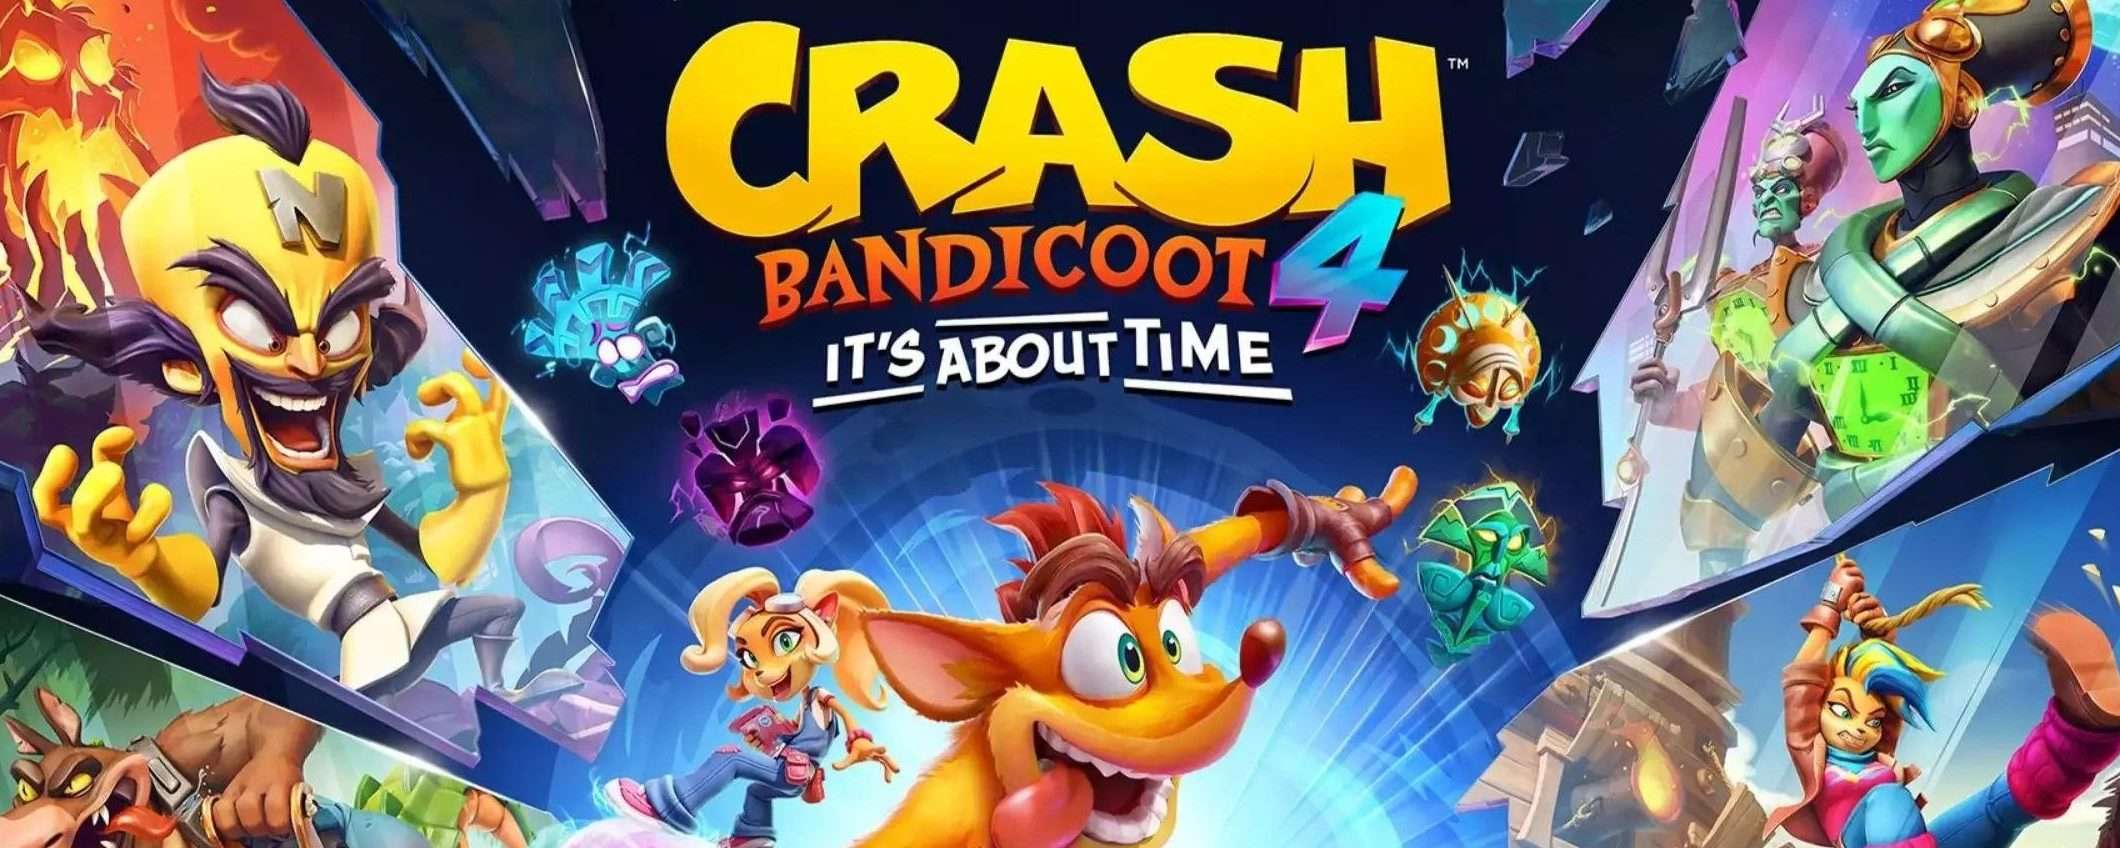 Crash Bandicoot 4 per Nintendo Switch a meno di 30€ su Amazon